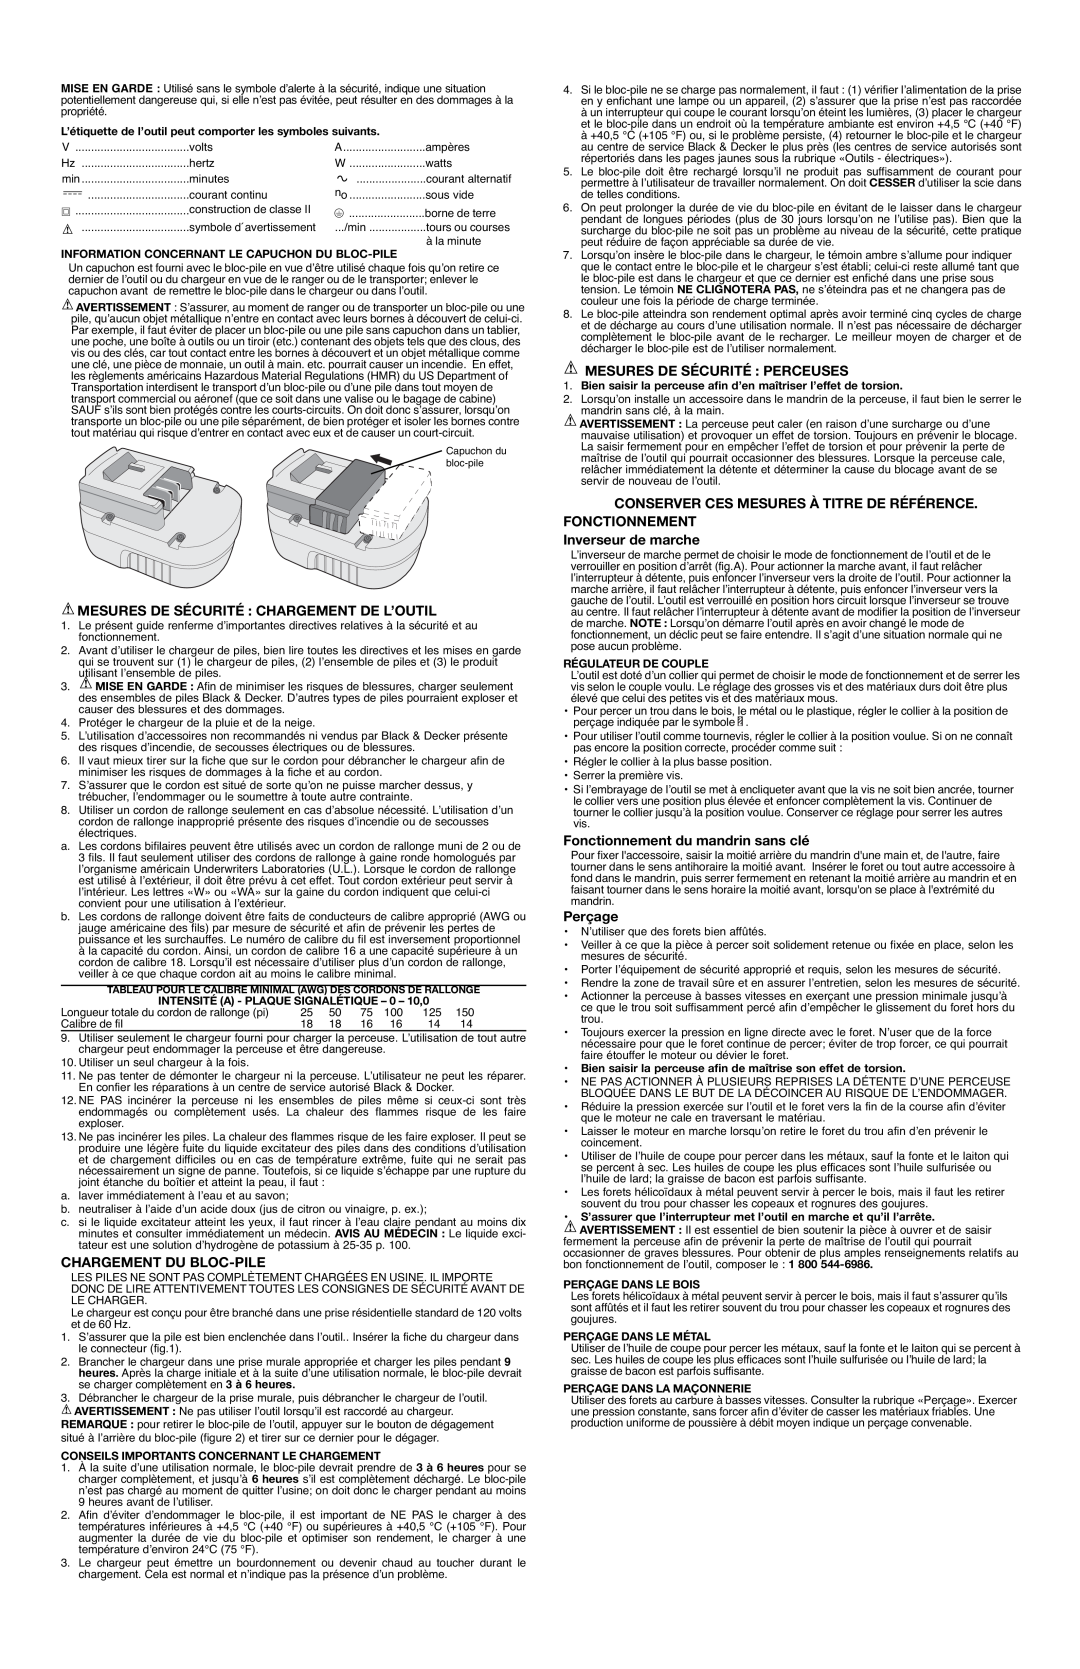 Black & Decker CD1800S Mesures De Sécurité Chargement De L’Outil, Chargement Du Bloc-Pile, Mesures De Sécurité Perceuses 